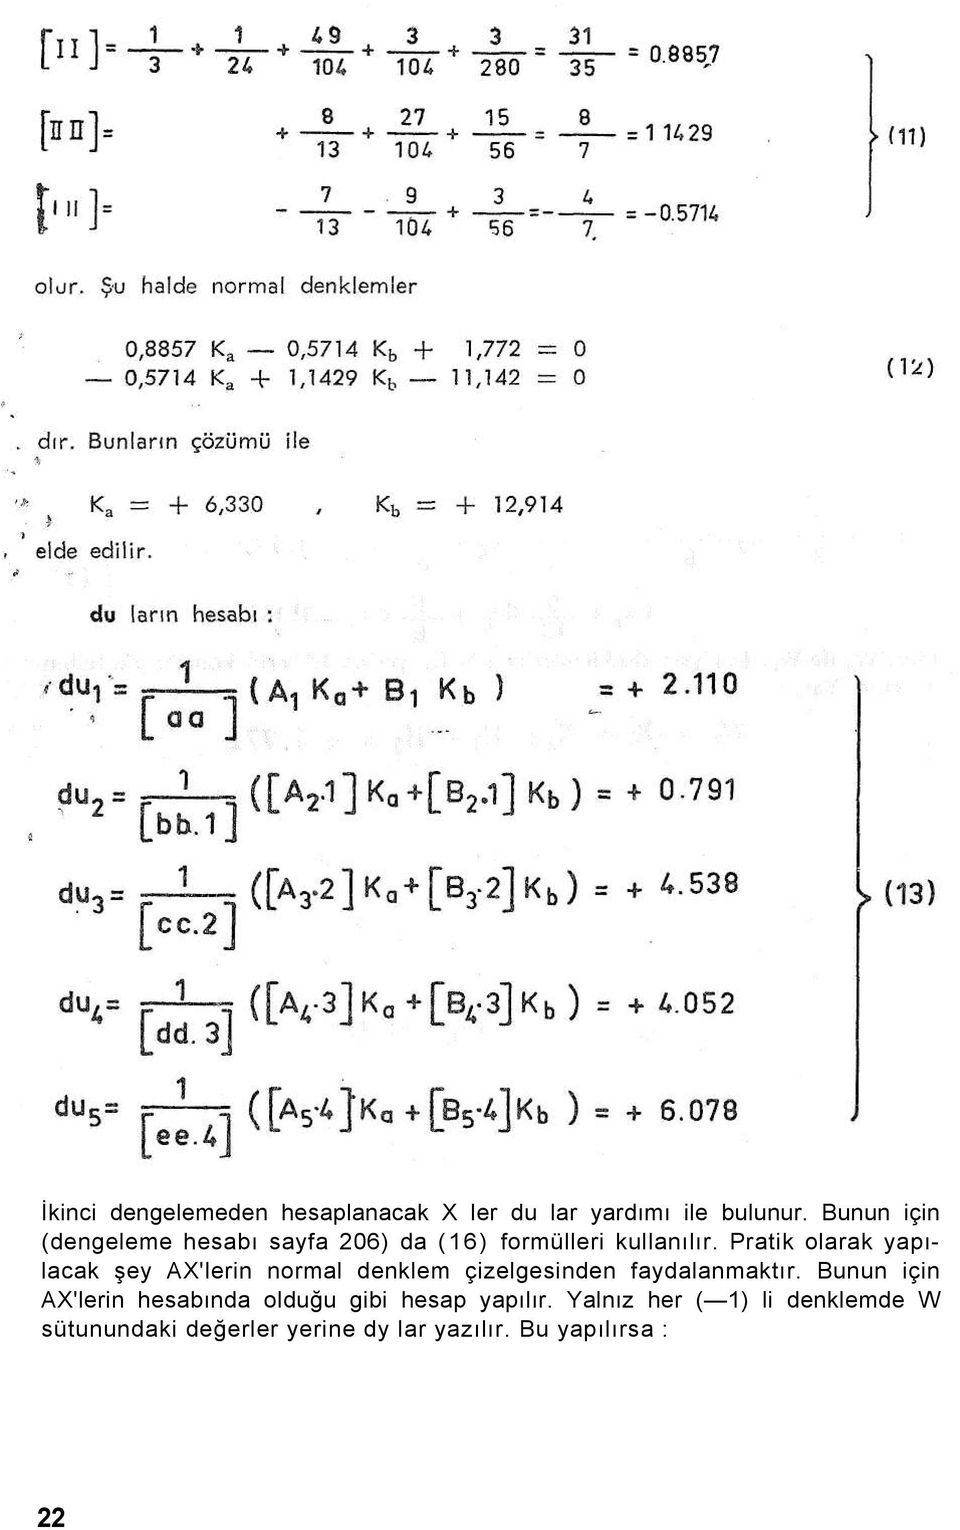 Pratik olarak yapılacak şey AX'lerin normal denklem çizelgesinden faydalanmaktır.